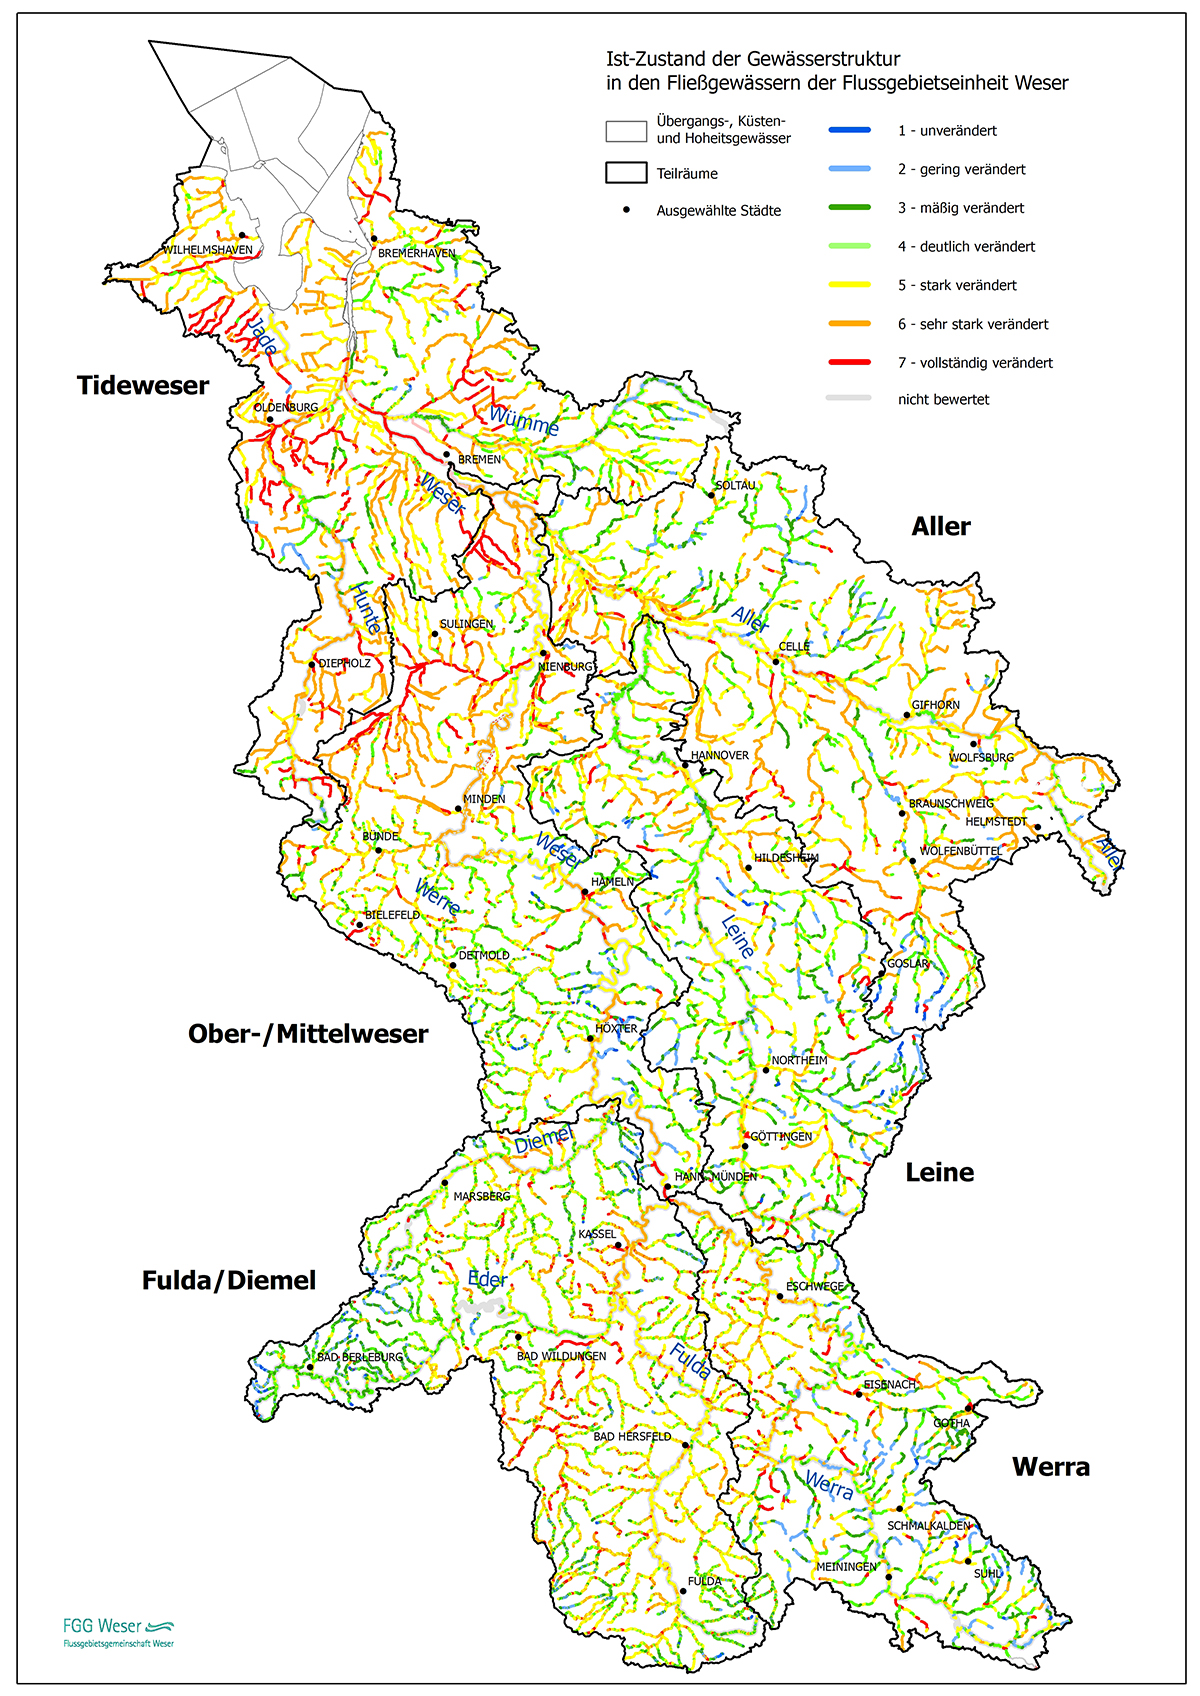 Ist-Zustand der Gewässerstruktur in den Fließgewässern der Flussgebietseinheit Weser